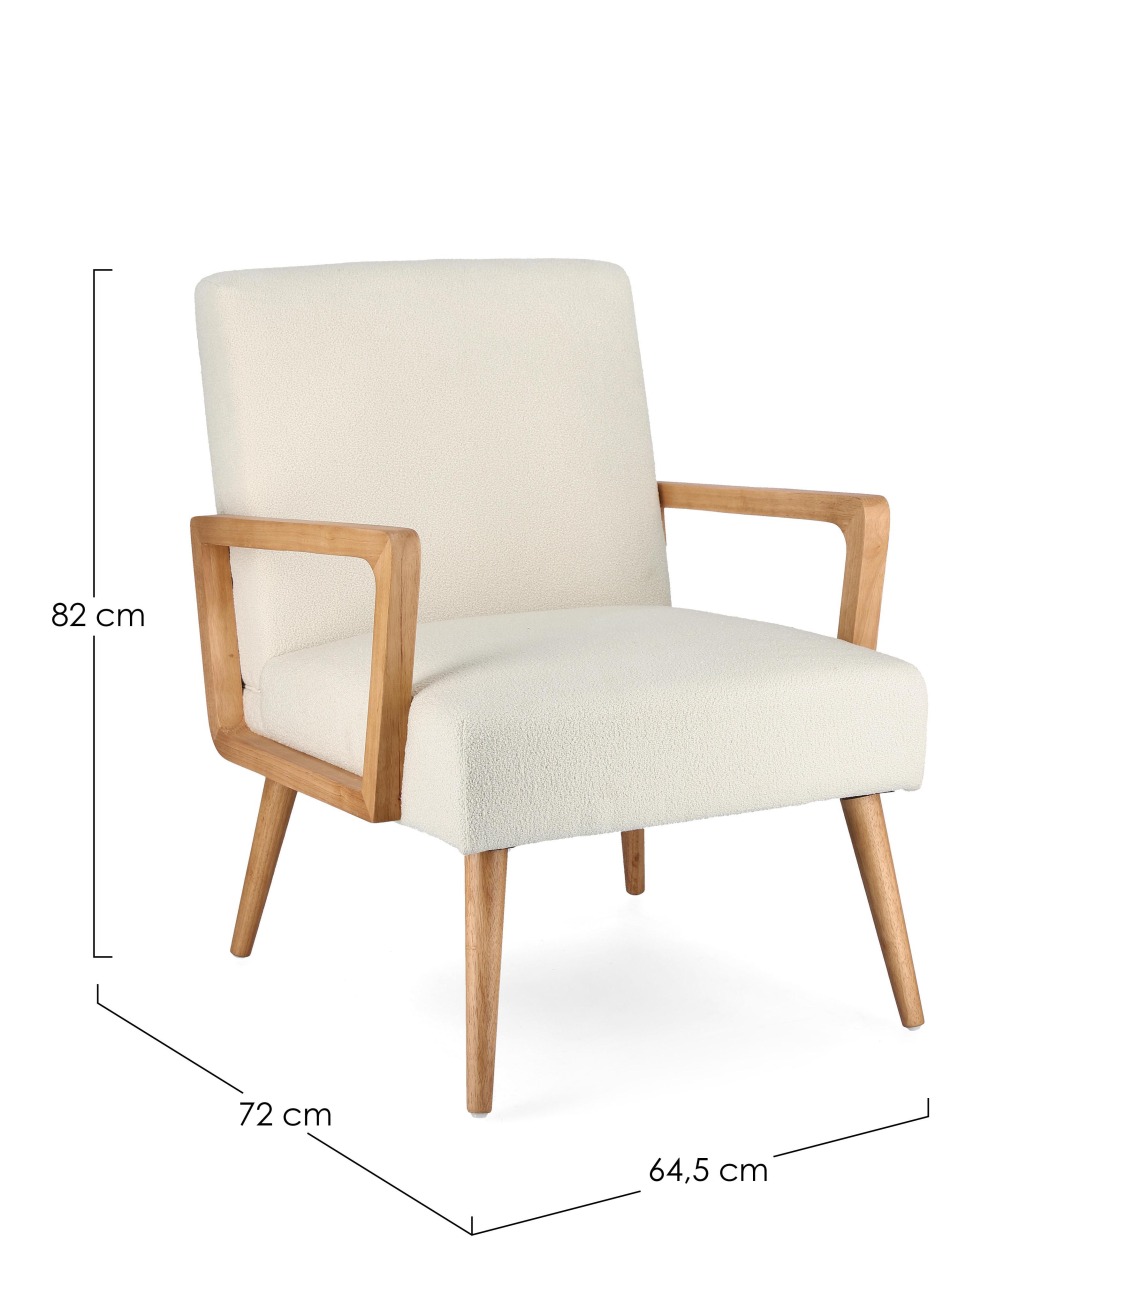 Der Sessel Verina überzeugt mit seinem modernen Stil. Gefertigt wurde er aus einem Stoff-Bezug, welcher einen Creme Farbton besitzt. Das Gestell ist aus Kautschukholz und hat eine natürliche Farbe. Der Sessel verfügt über eine Armlehne.